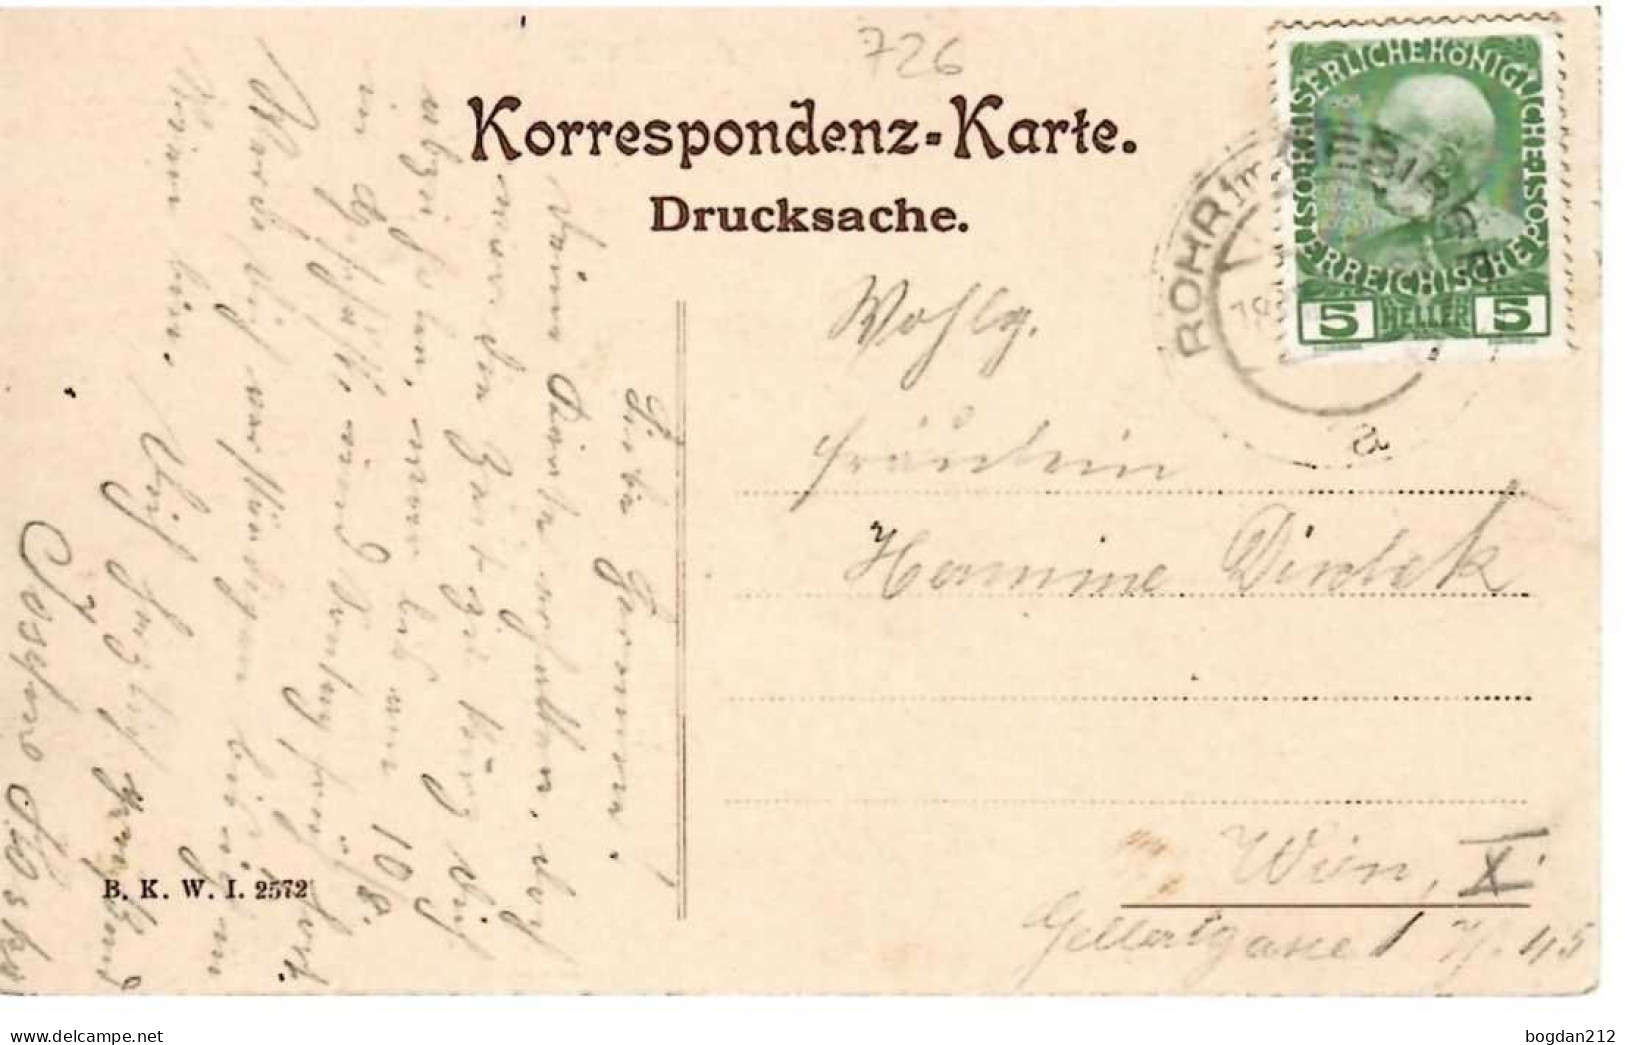 1908/10 - Rohr Im Gebirge , Gute Zustand, 2 Scan - Wiener Neustadt